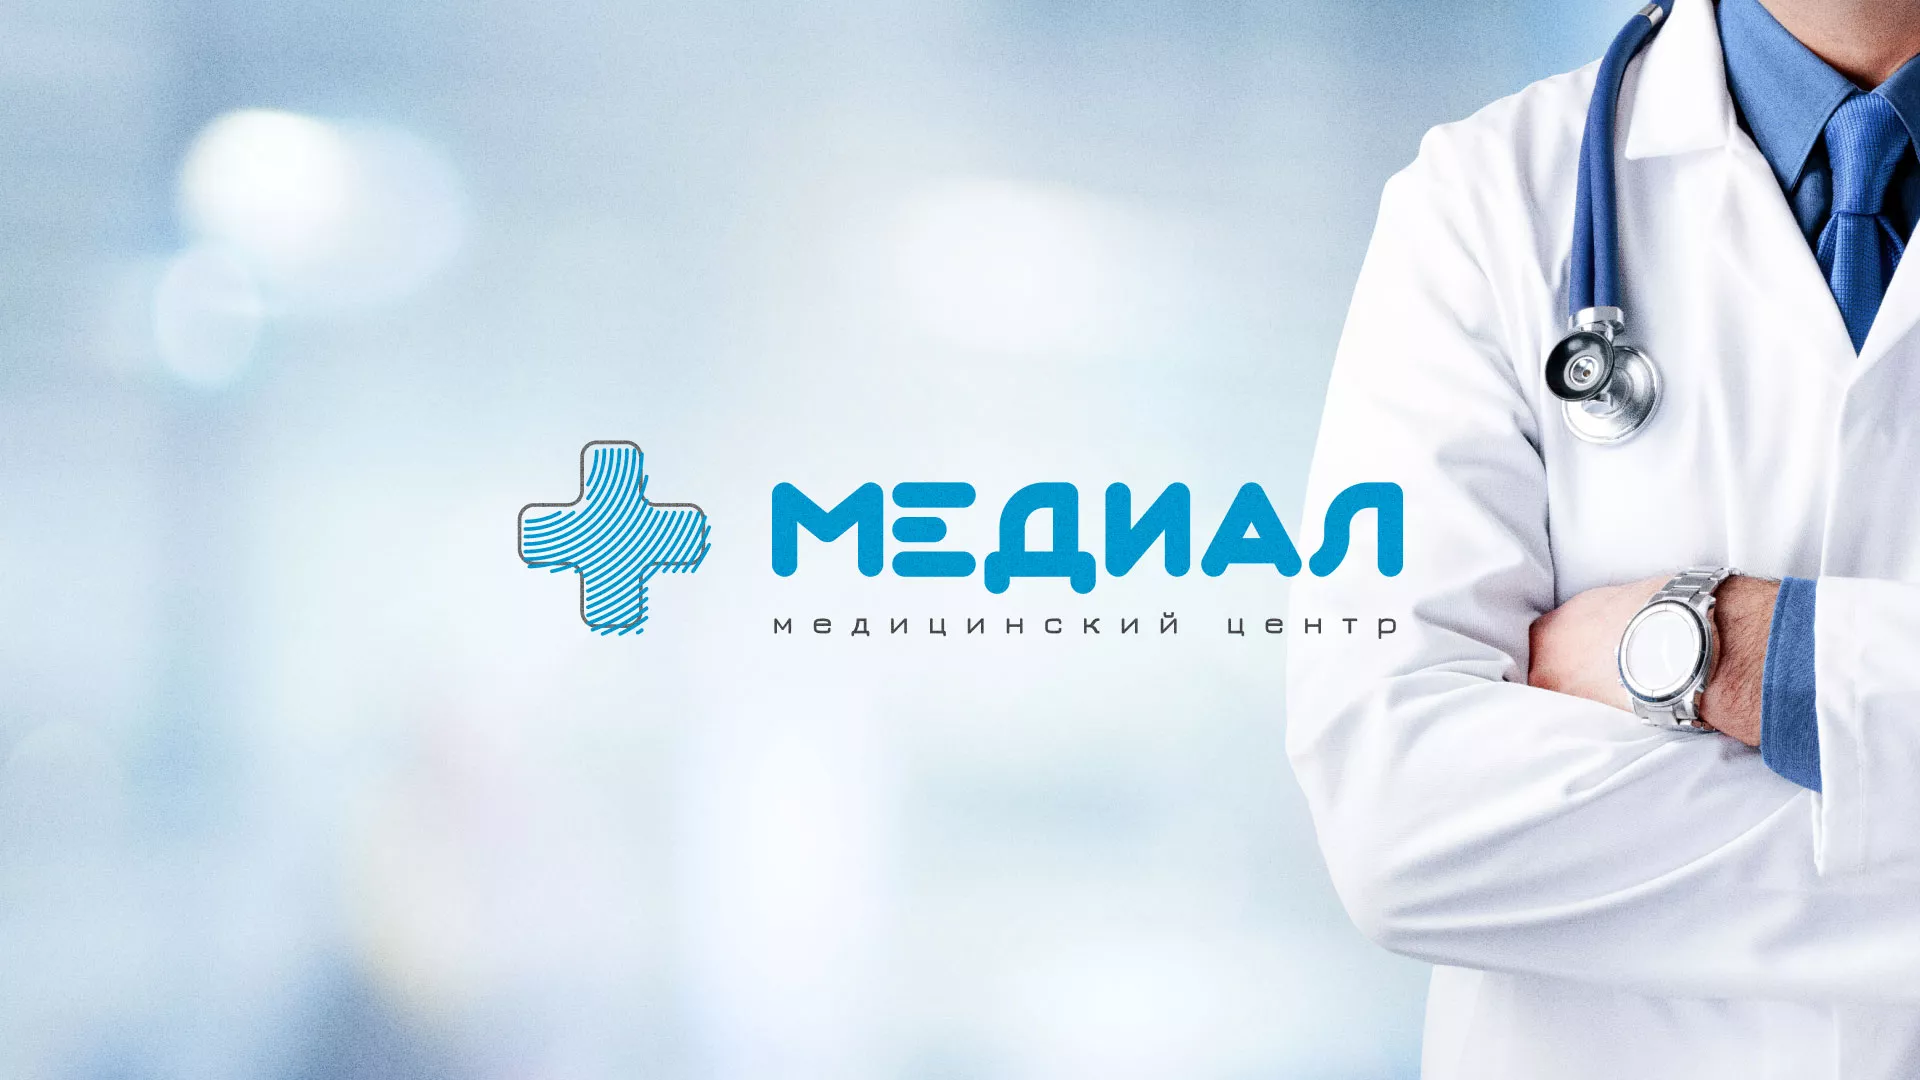 Создание сайта для медицинского центра «Медиал» в Меленках